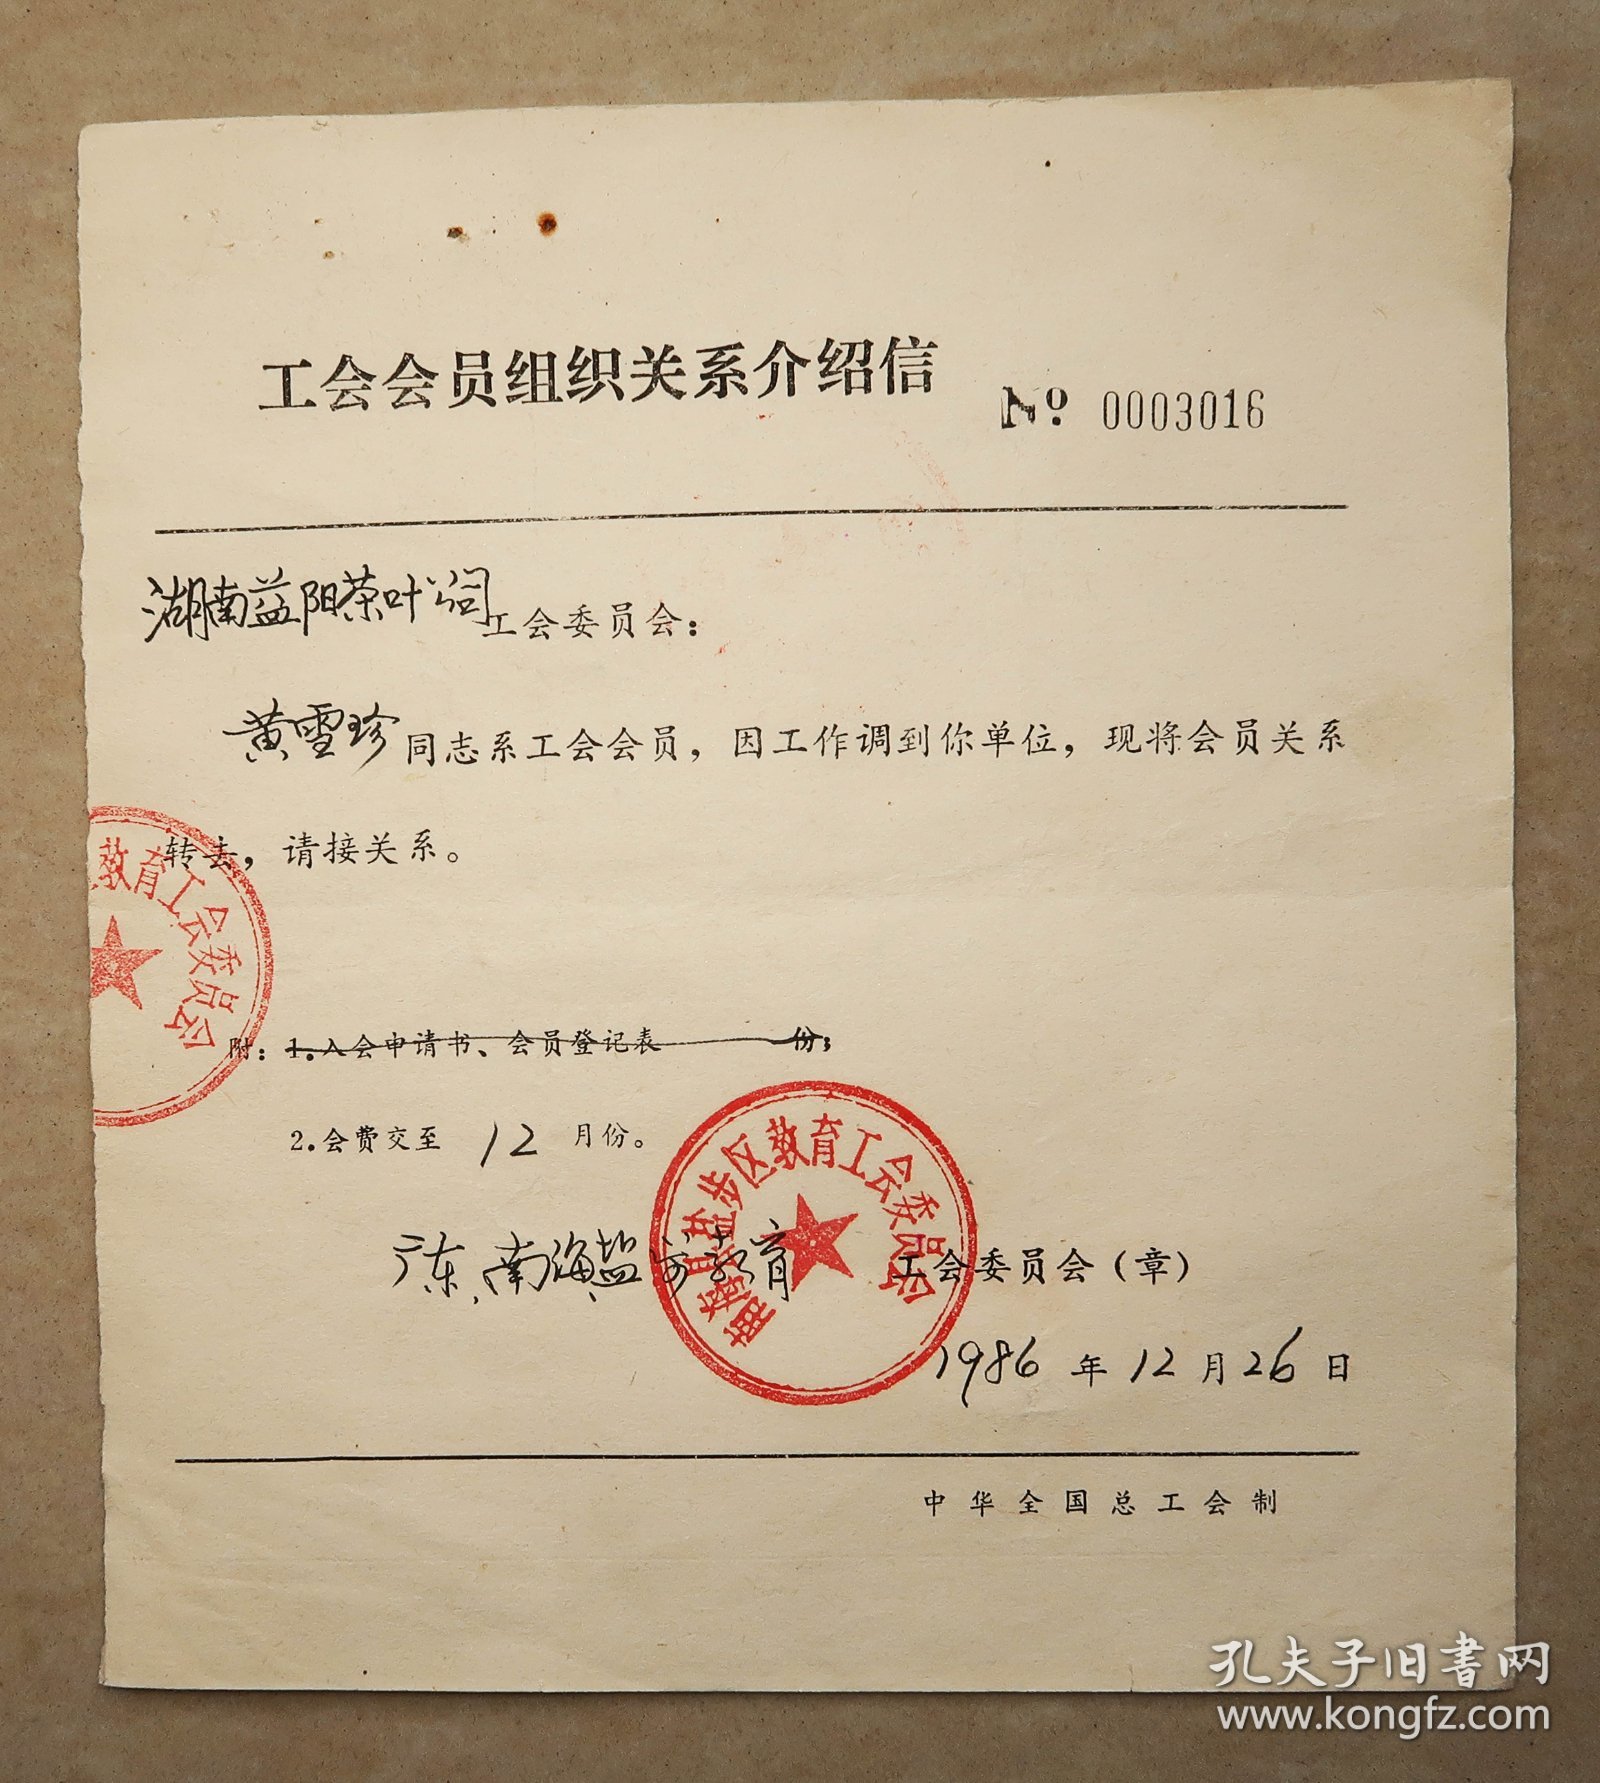 益阳县茶叶公司  工会会员组织关系介绍信   1986年  工会会员登记表  1988年  二表同一人